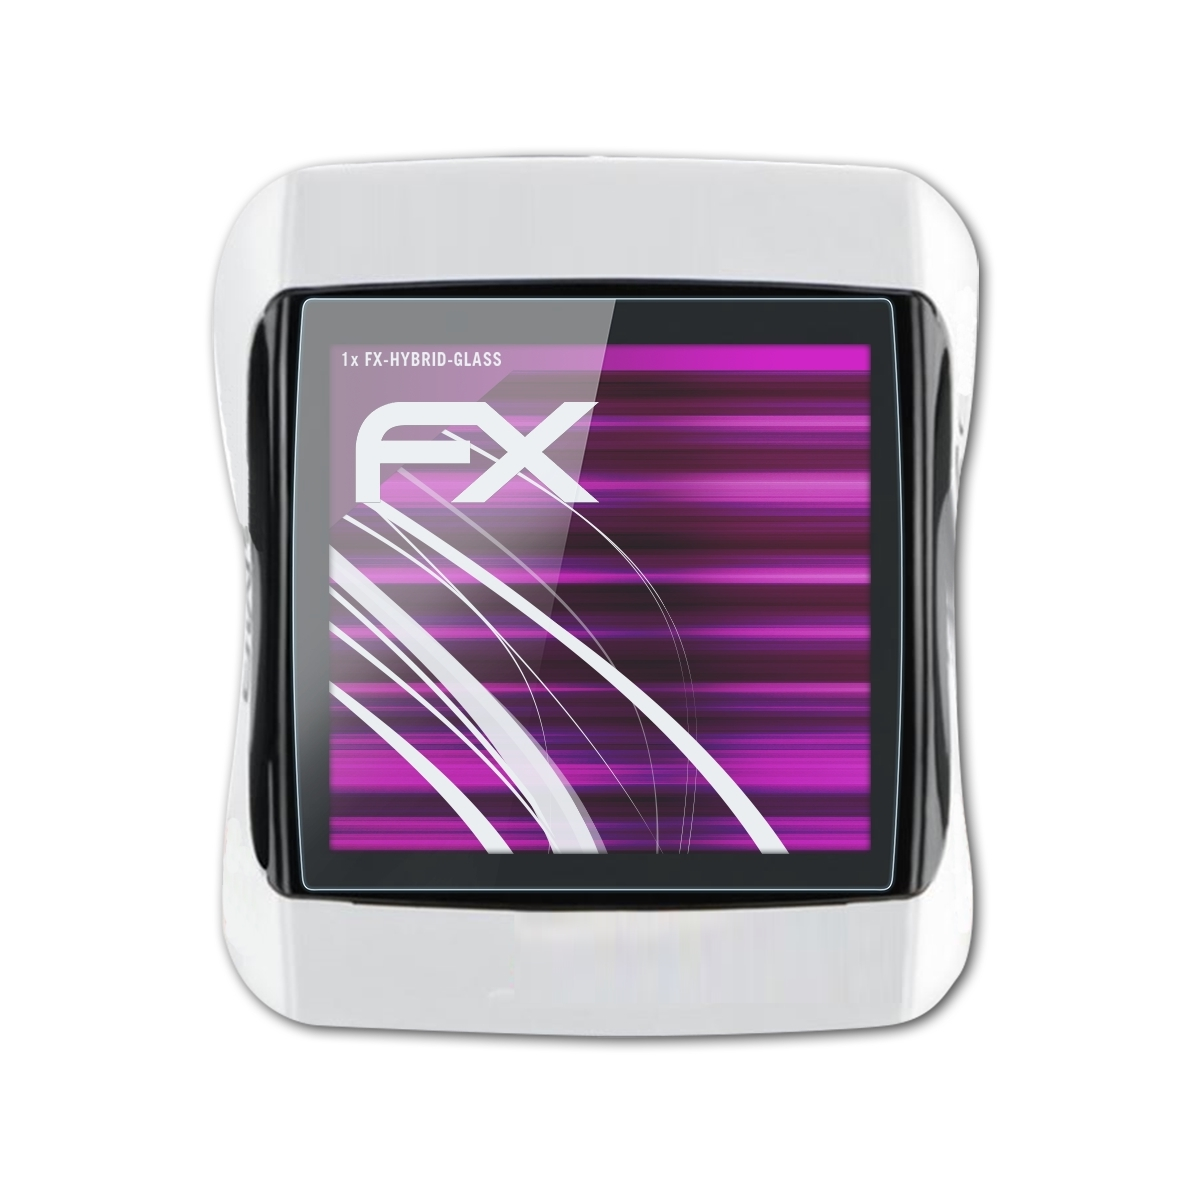 FX-Hybrid-Glass Schutzglas(für ATFOLIX 6.0) Rox Sigma